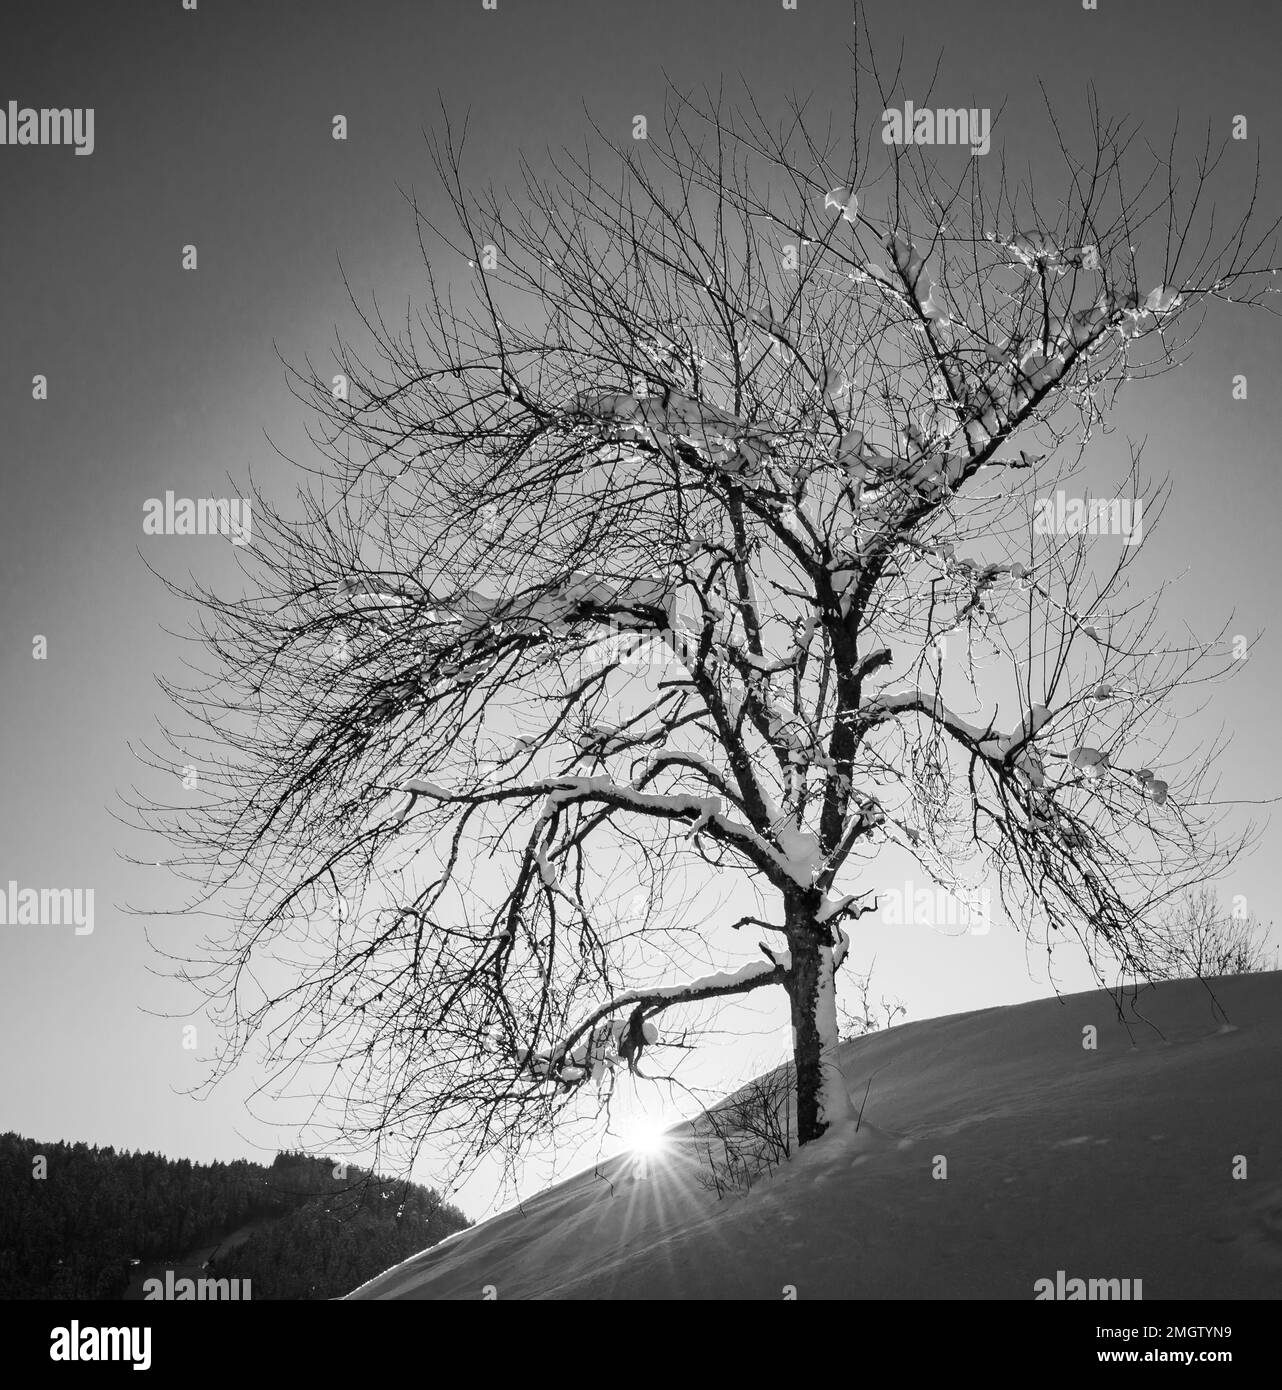 albero in un prato innevato in una giornata di sole. Parco Naturale Adamello Brenta, Trentino Alto Adige, Italia settentrionale, Europa - immagine in bianco e nero Foto Stock